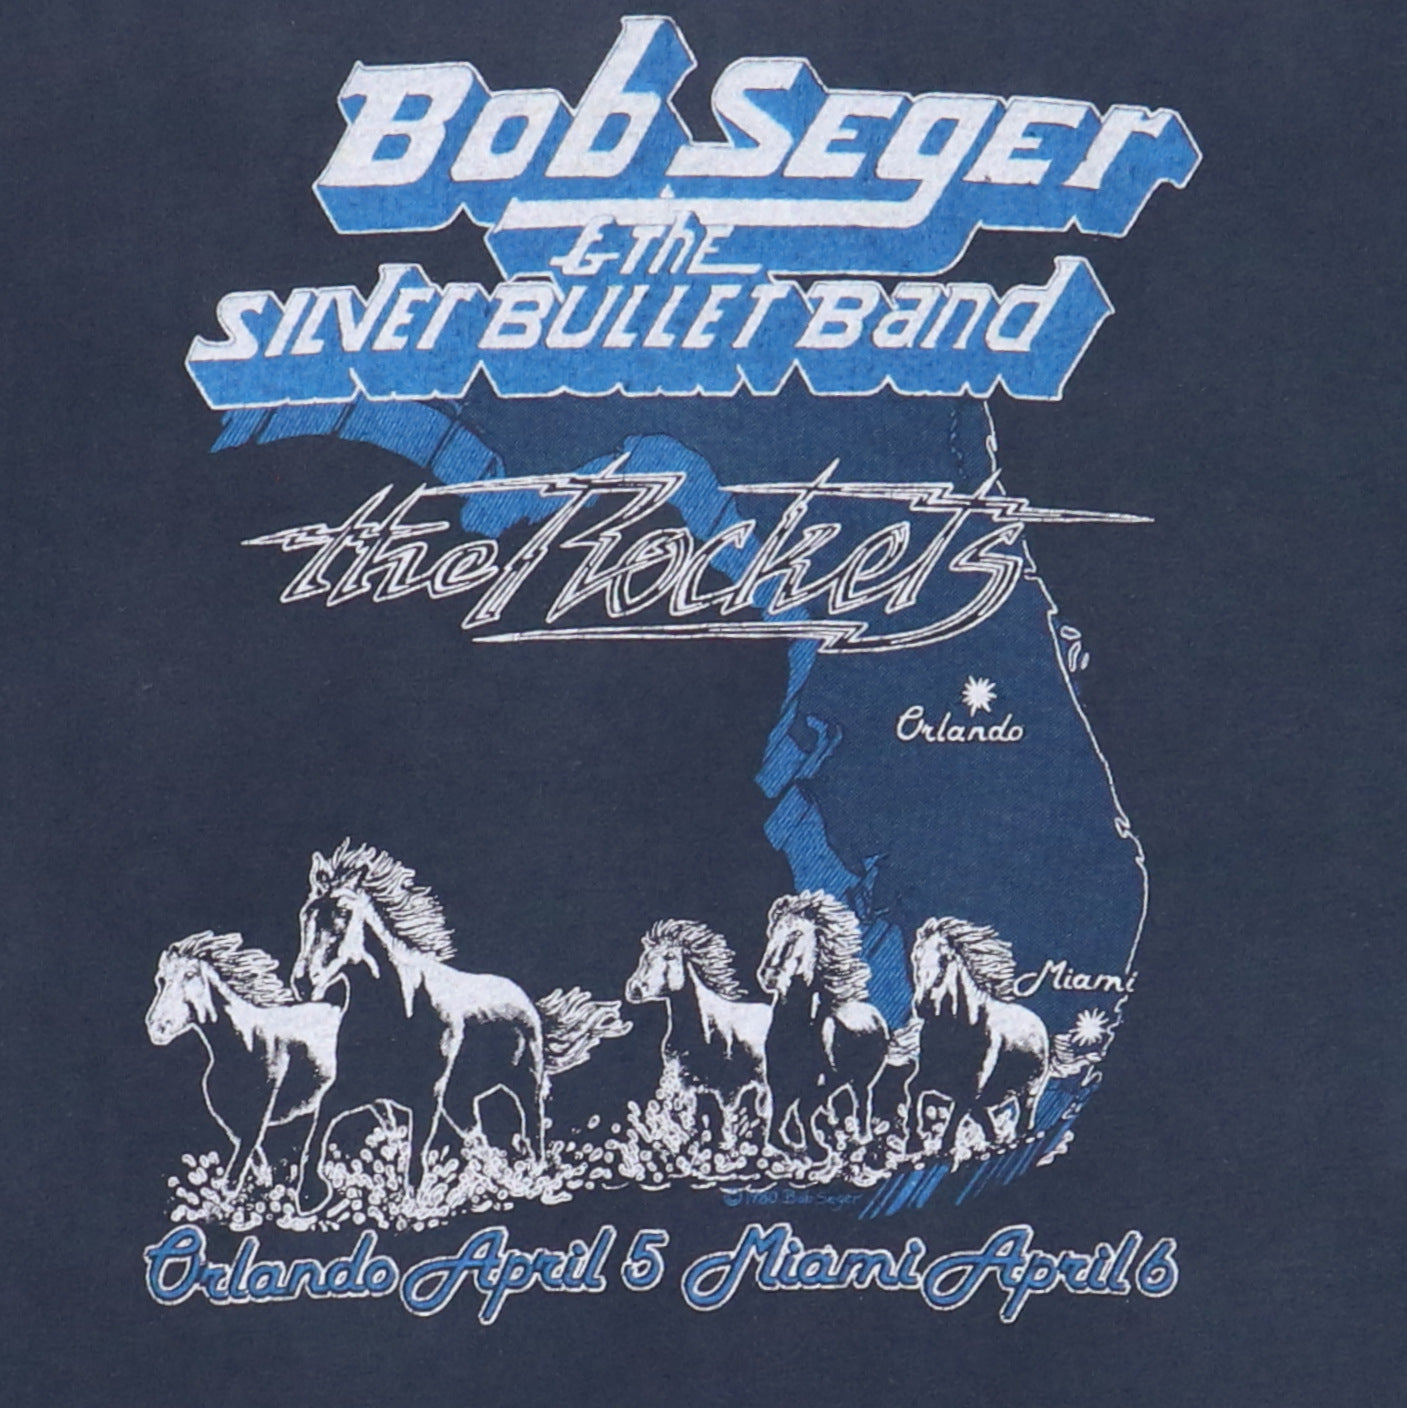 1980 Bob Seger Rock Super Bowl Concert Shirt